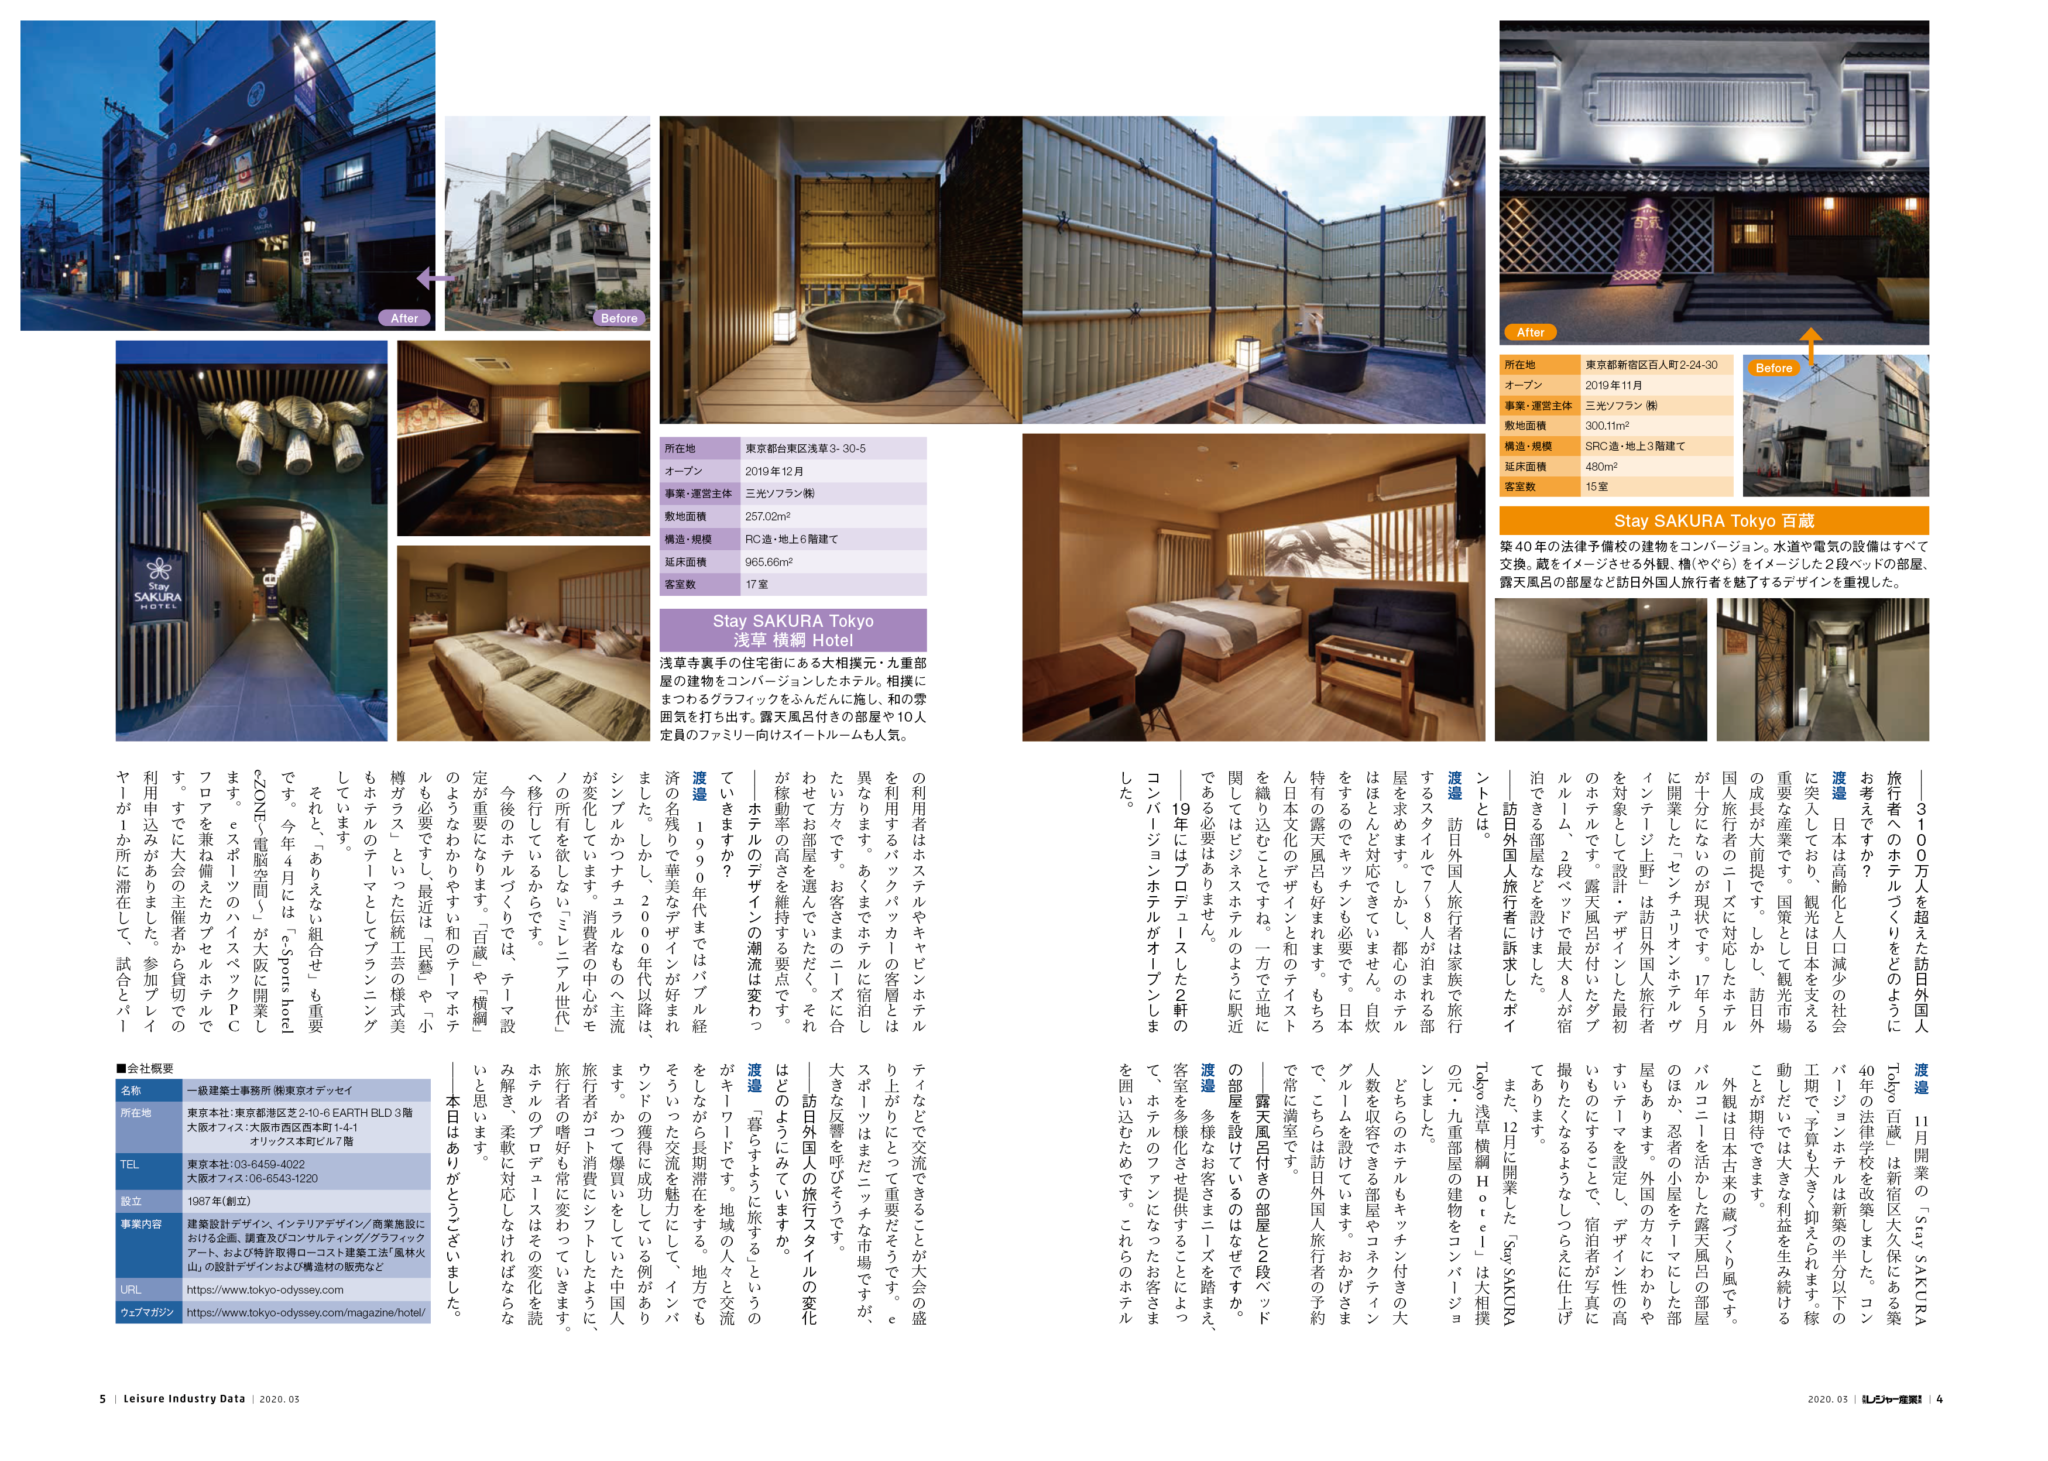 東京オデッセイのホテル設計デザインノウハウ「ファンを獲得し売上を増加させる」